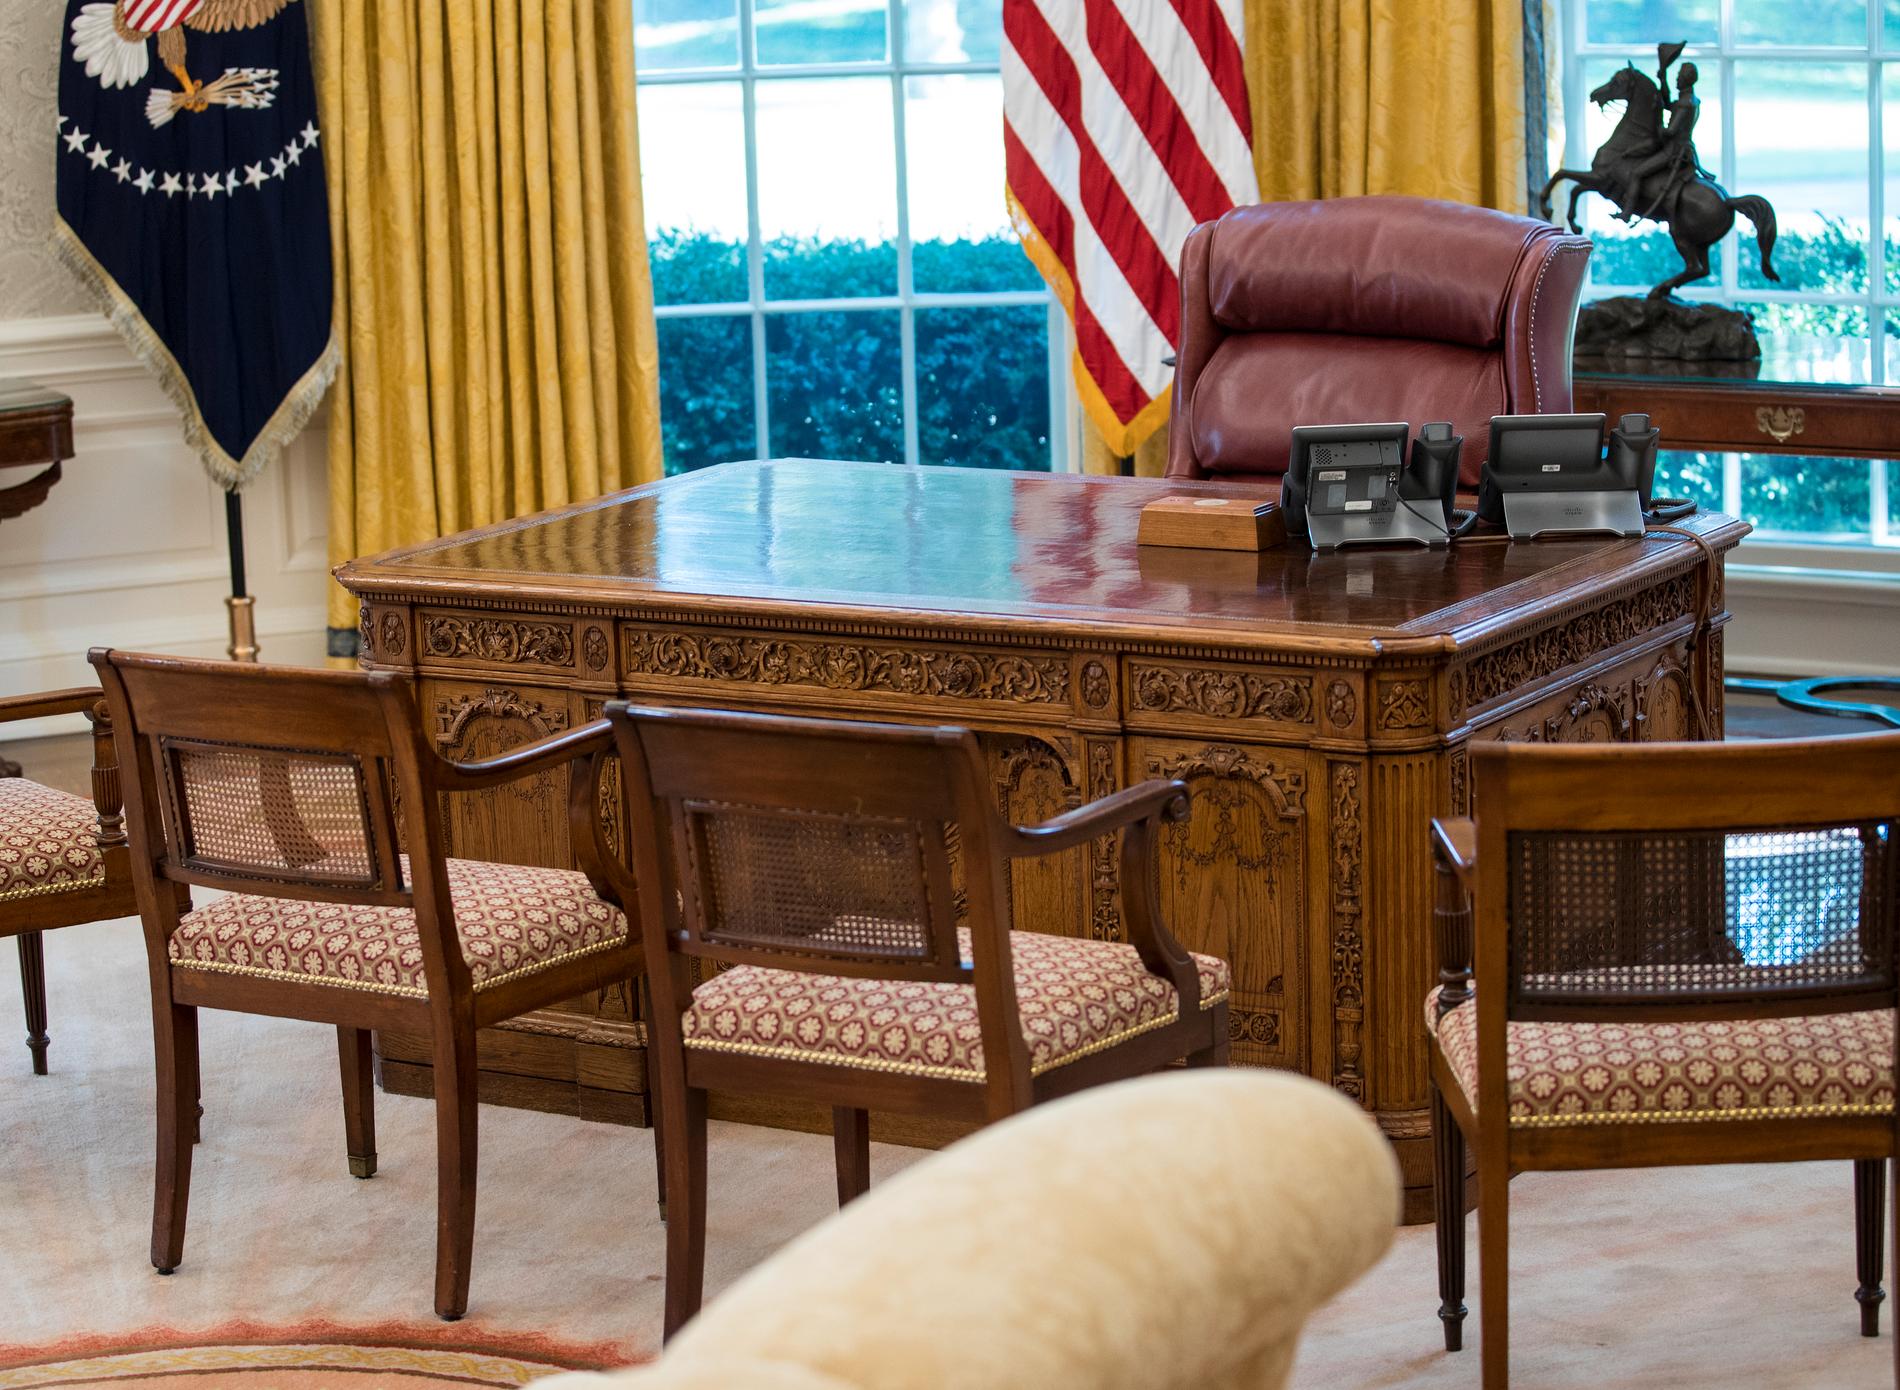 Ovala rummet ligger öde när presidenten istället sägs jobba från Kartrummet på bottenvåningen.